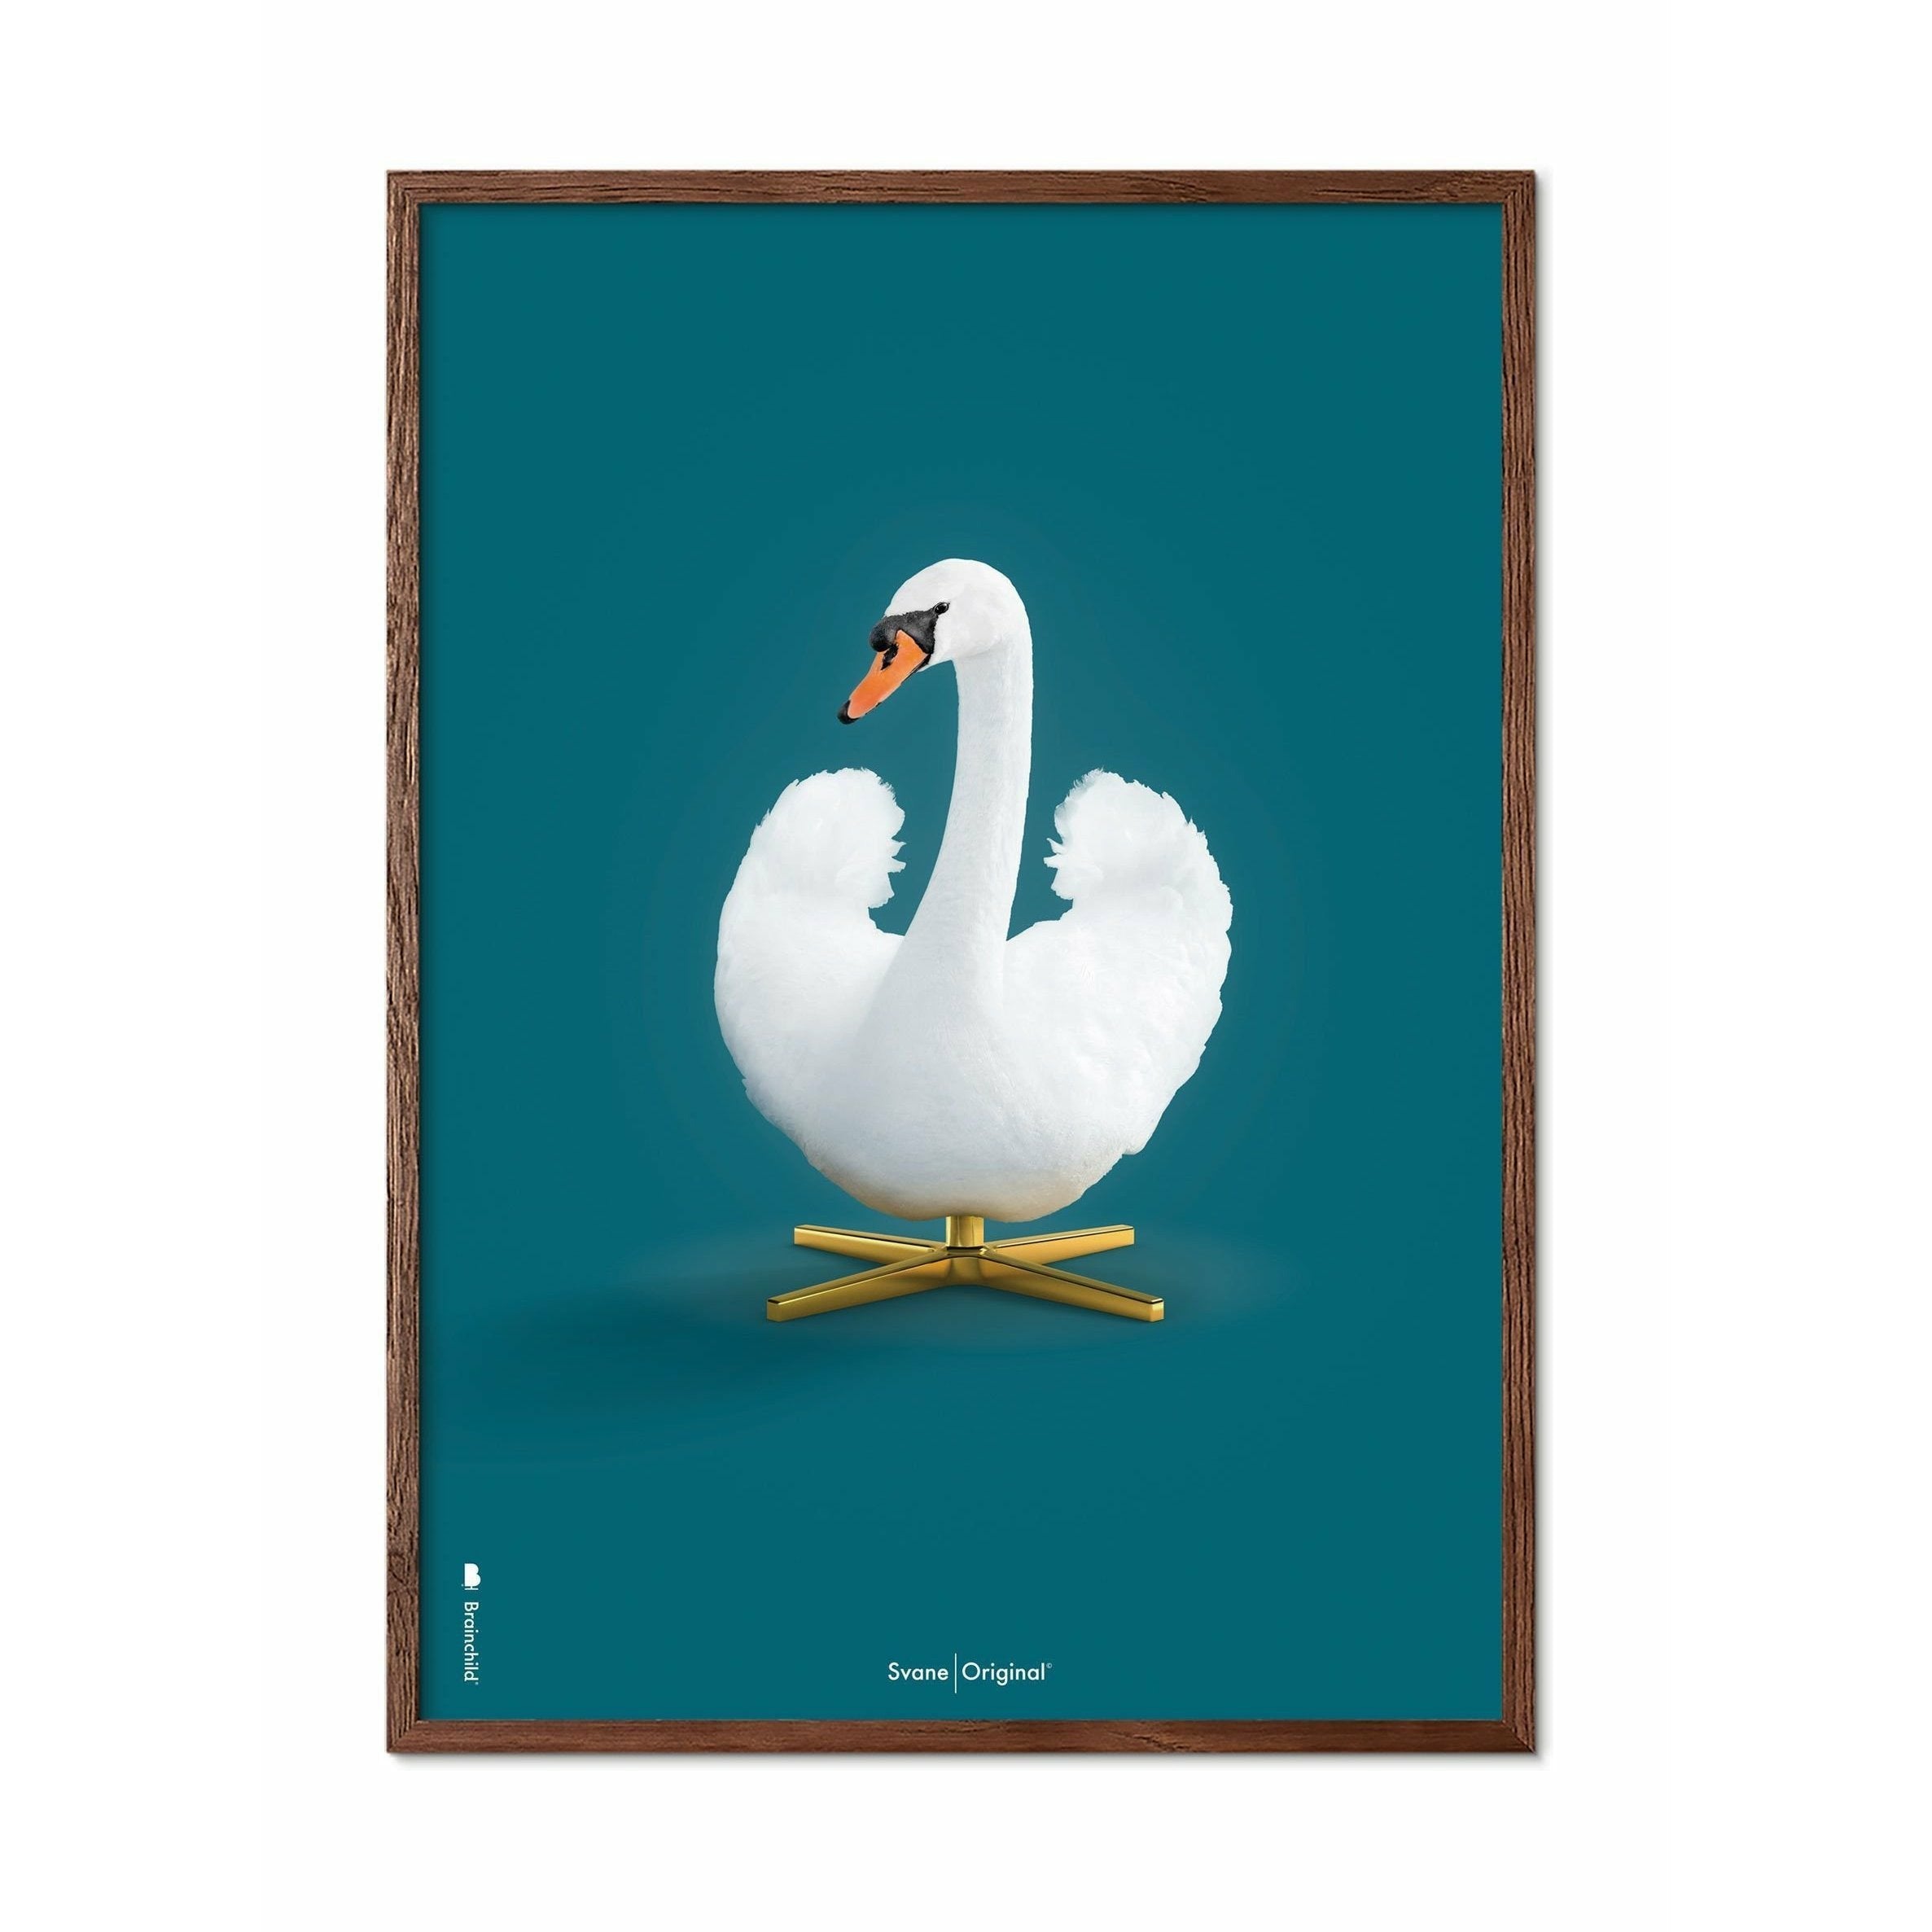 Pomysły Swan Classic Plakat, Dark Wood Frame 50x70 cm, ropopochodne tło